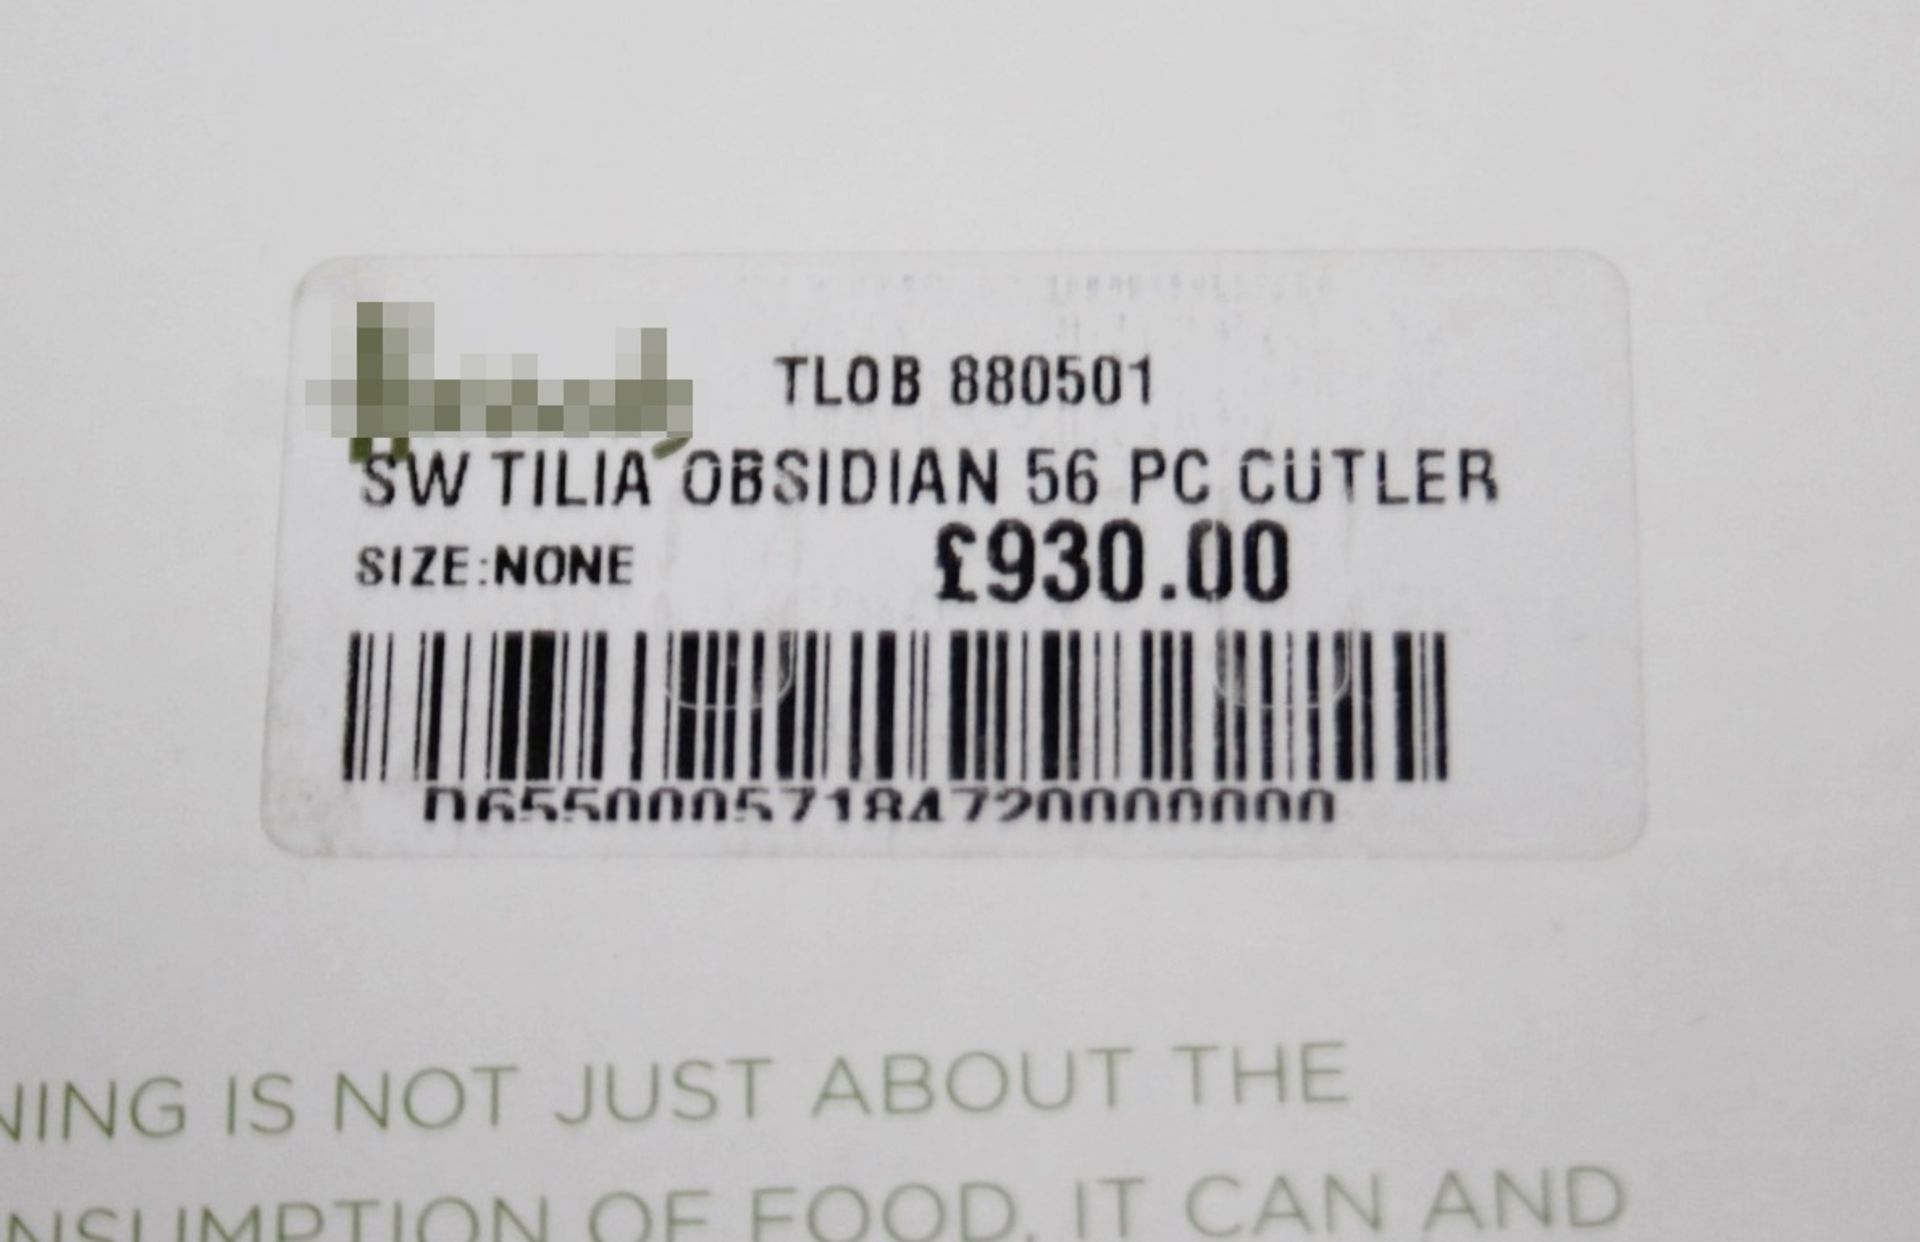 1 x STUDIO WILLIAM 'Tilia Obsidian' 56-Piece Cutlery Set - Original Price £930.00 - Unused Boxed - Image 5 of 11